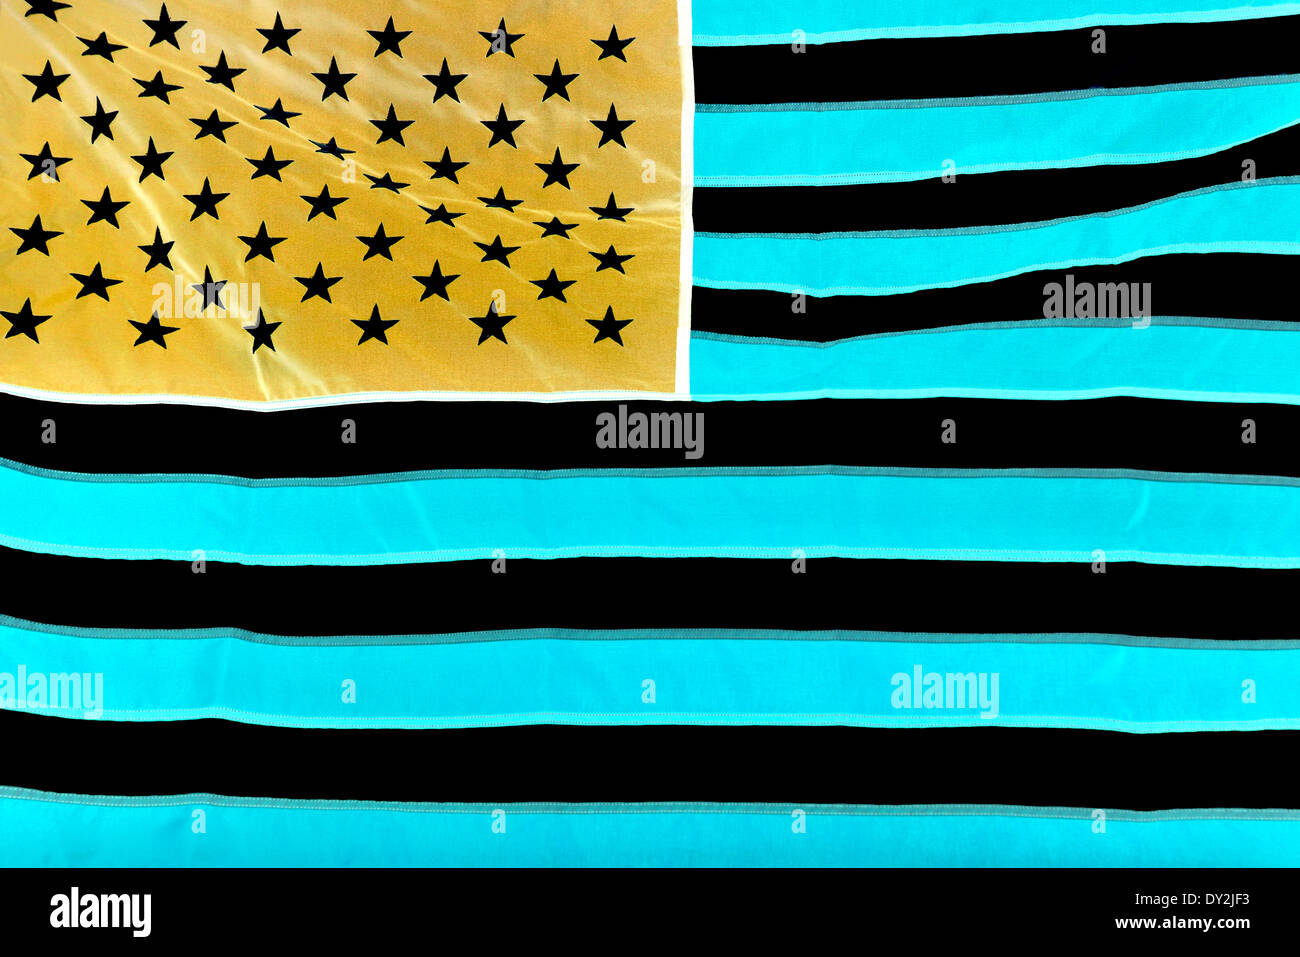 La bandera nacional de los Estados Unidos de América versión negativa. Foto de stock